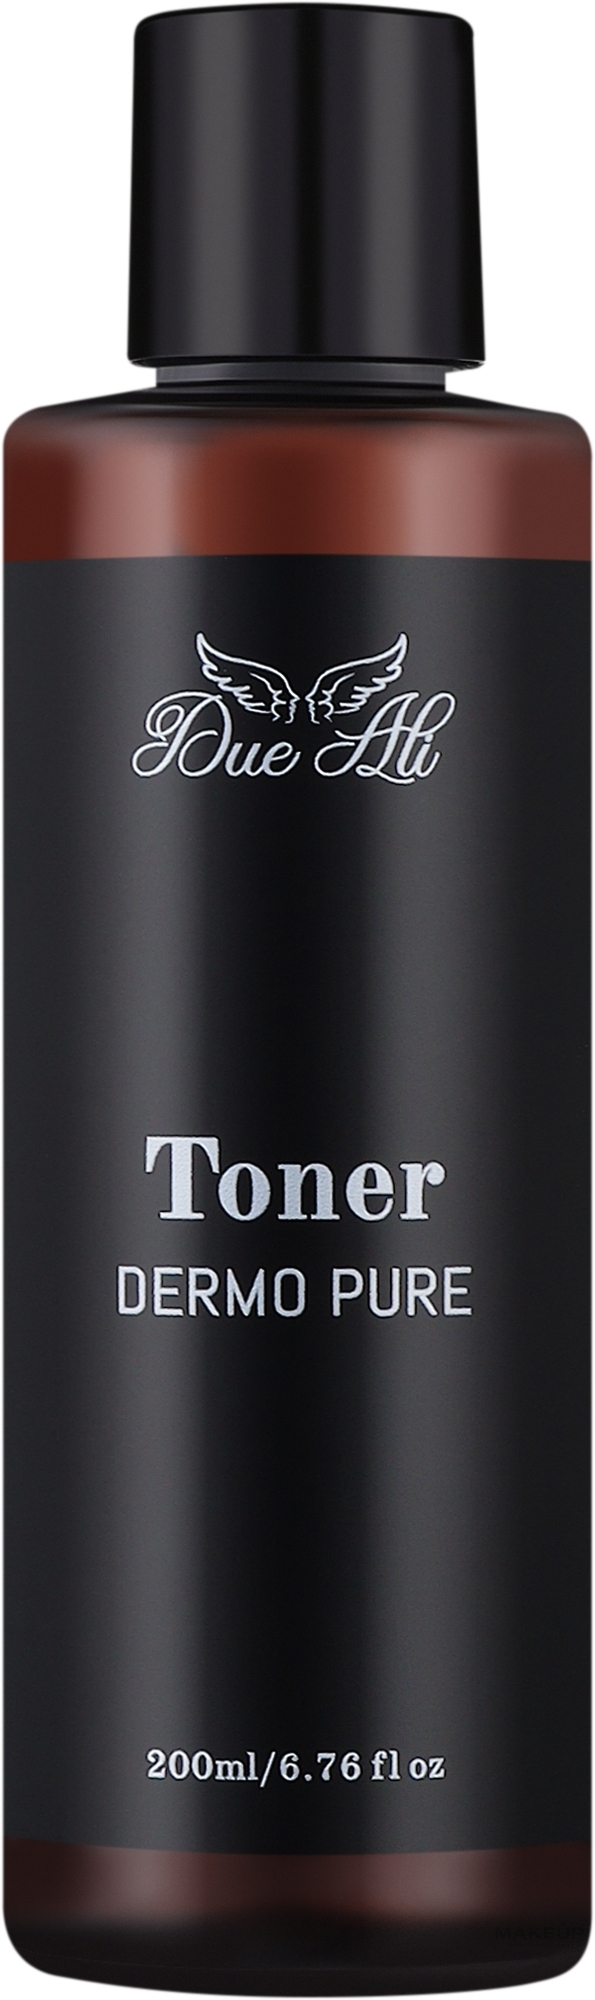 Противовоспалительный тонер для проблемной кожи лица - Due Ali Toner Dermo Pure — фото 200ml